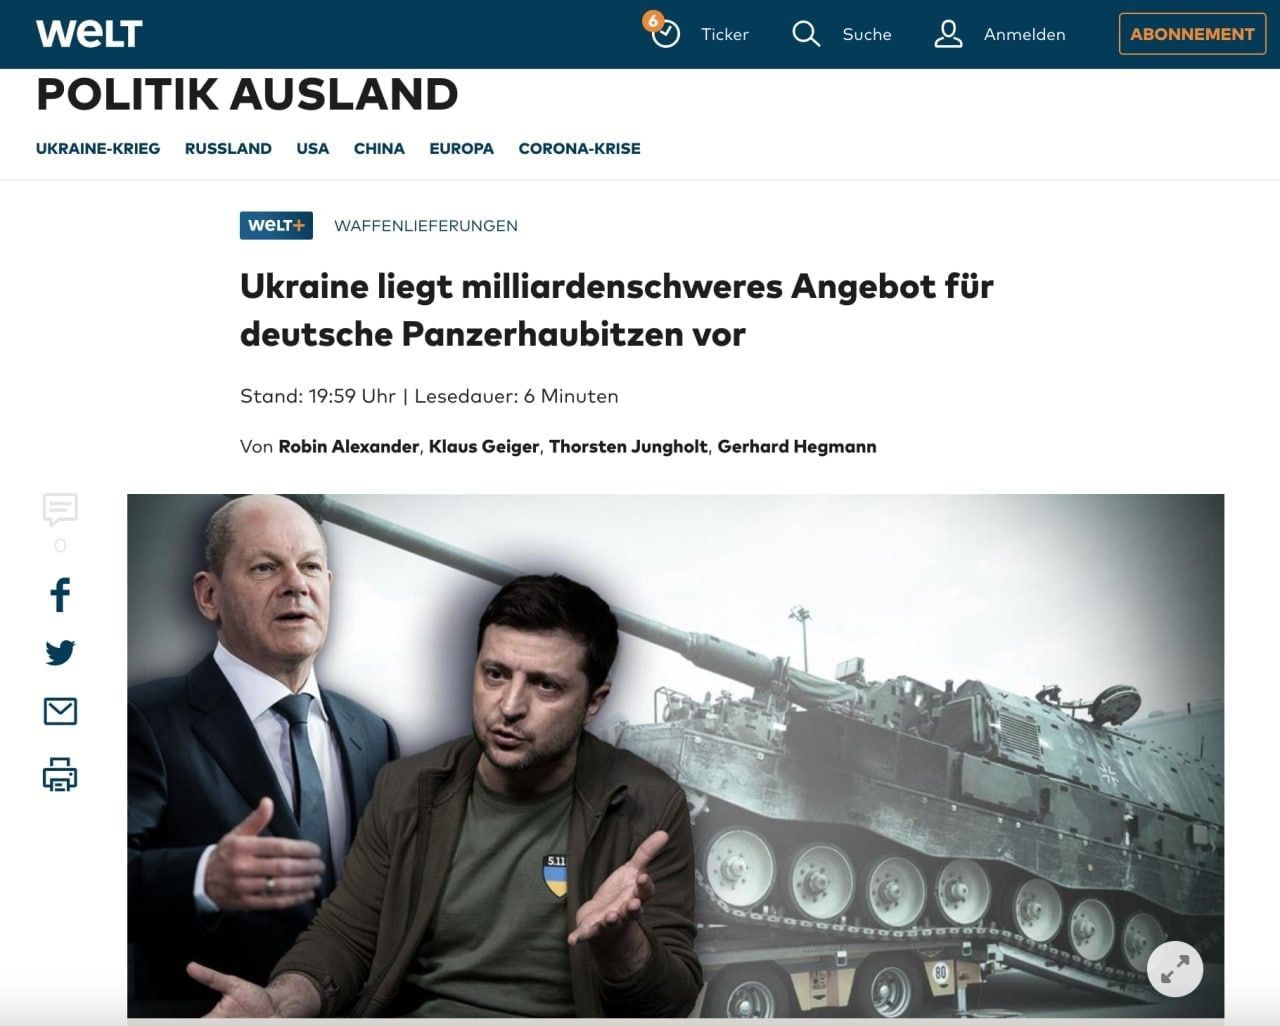 Ukraine: Wohin gehen die Hunderte von Millionen Dollar an Hilfsgeldern? Milliarden für deutsche Panzer